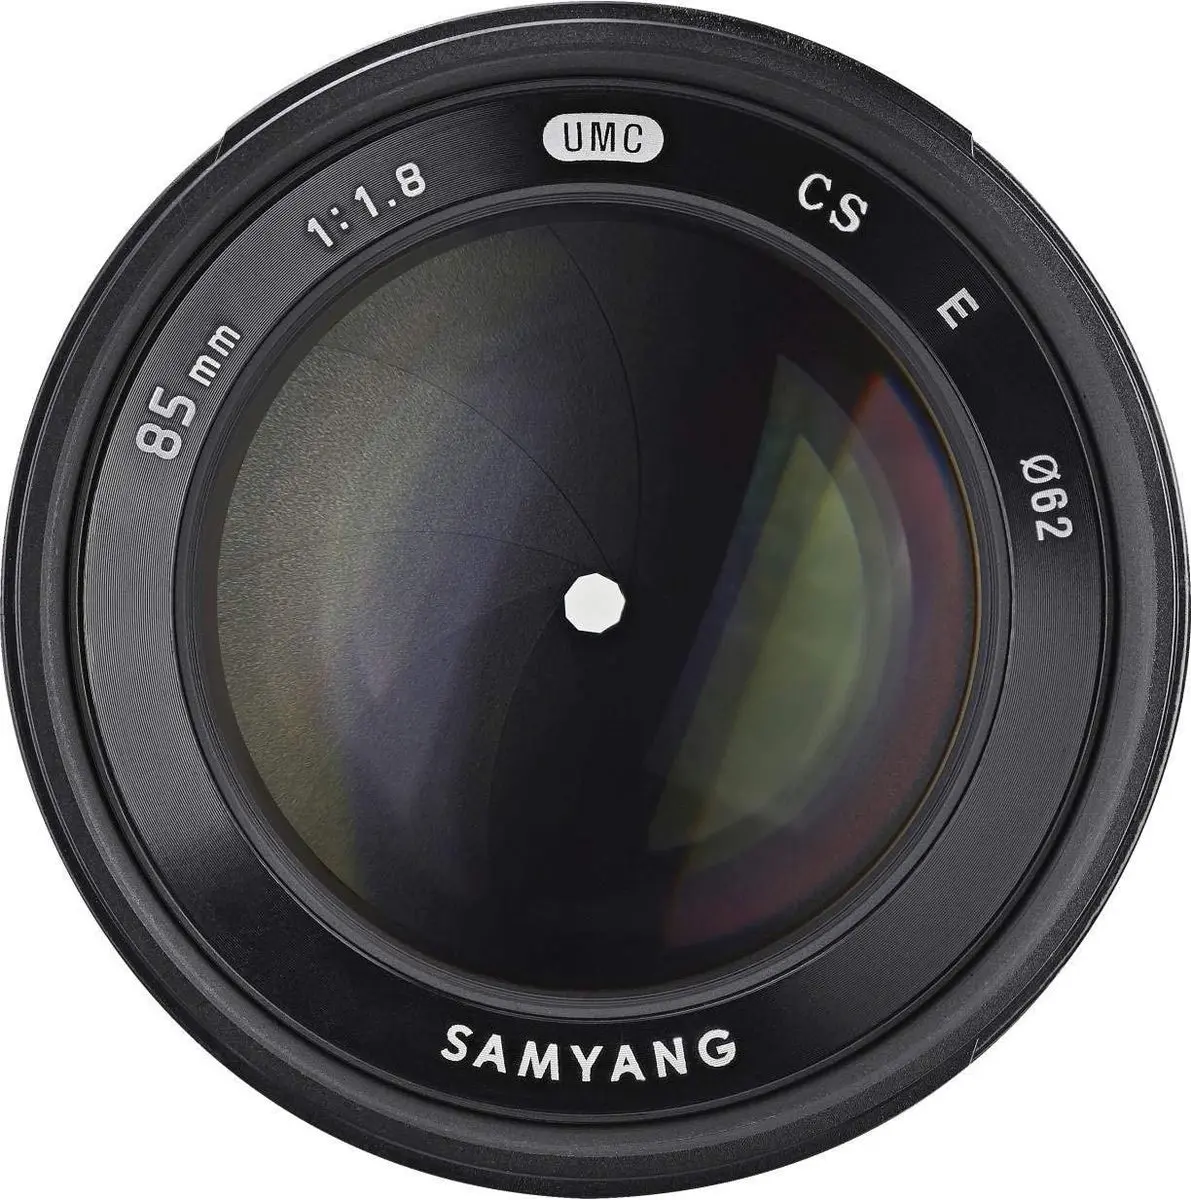 5. Samyang 85mm f/1.8 ED UMC CS (Canon M) Lens